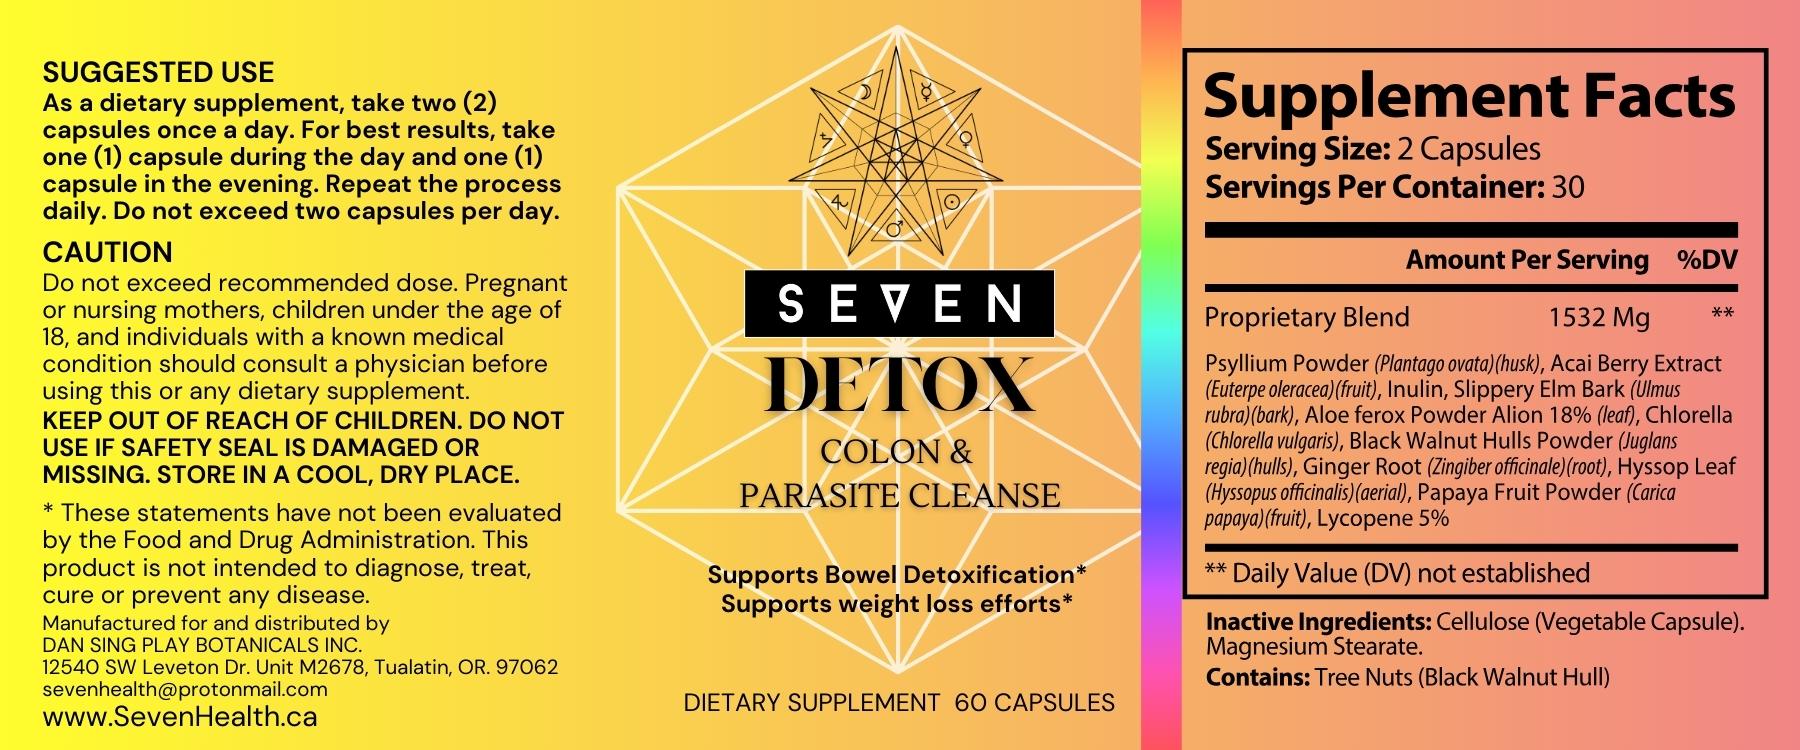 Detox: Colon & Parasite Cleanse